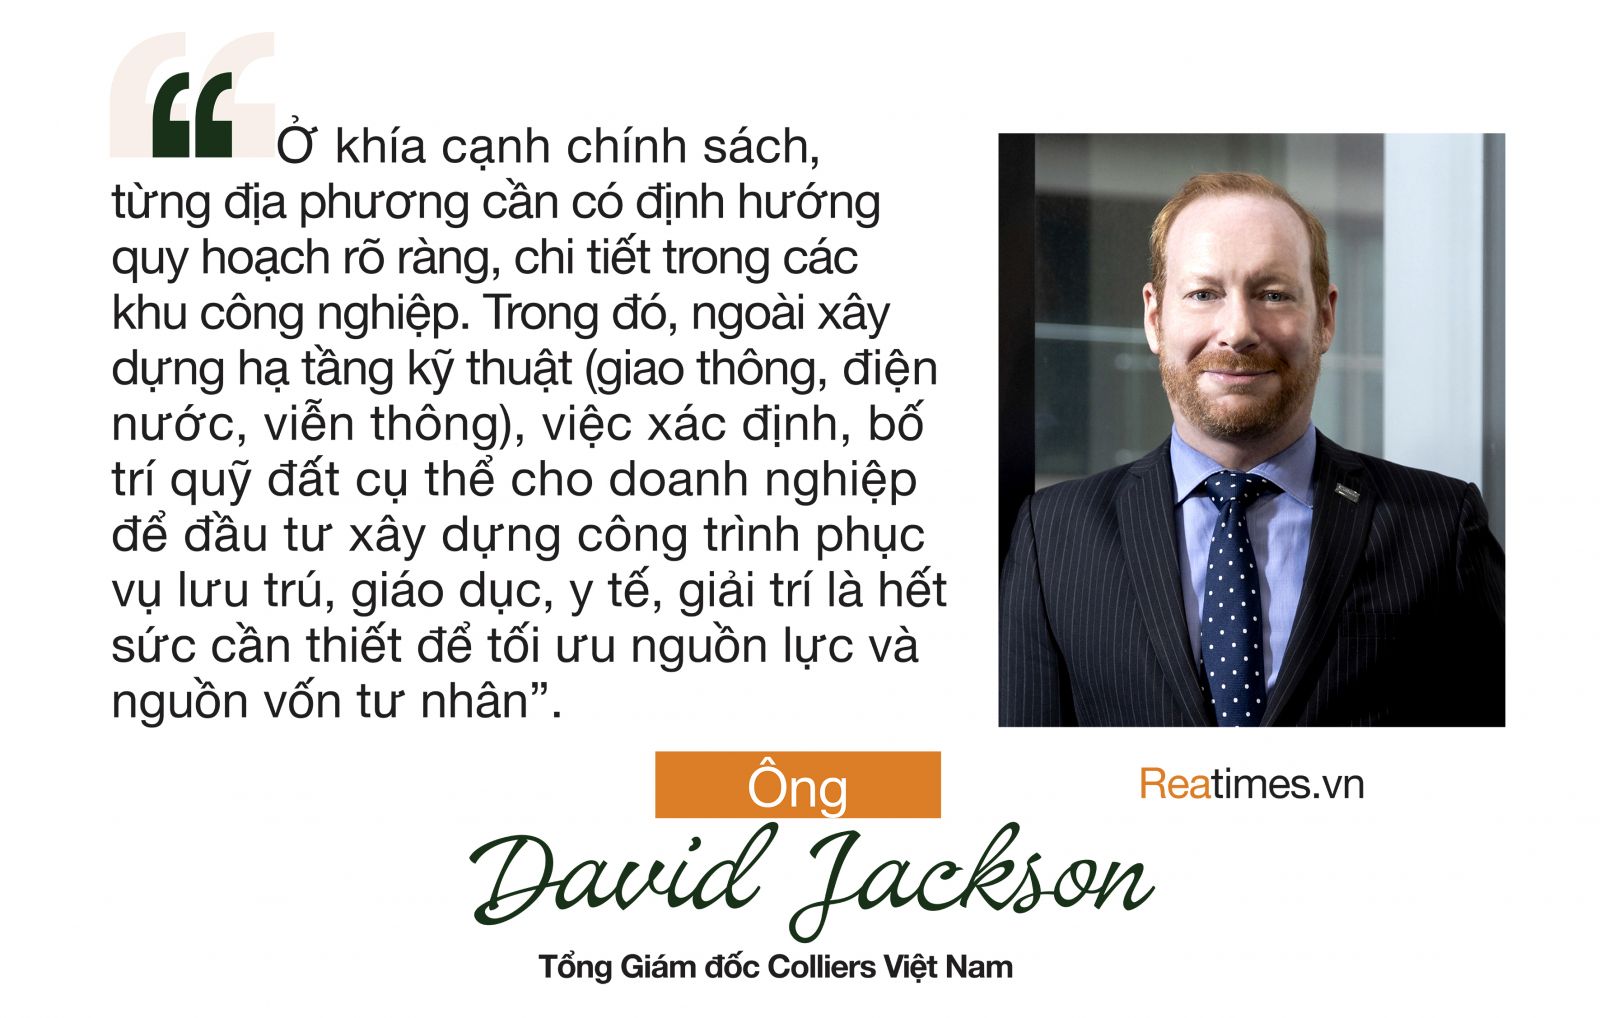 Ông David Jackson - Tổng Giám đốc Colliers Việt Nam